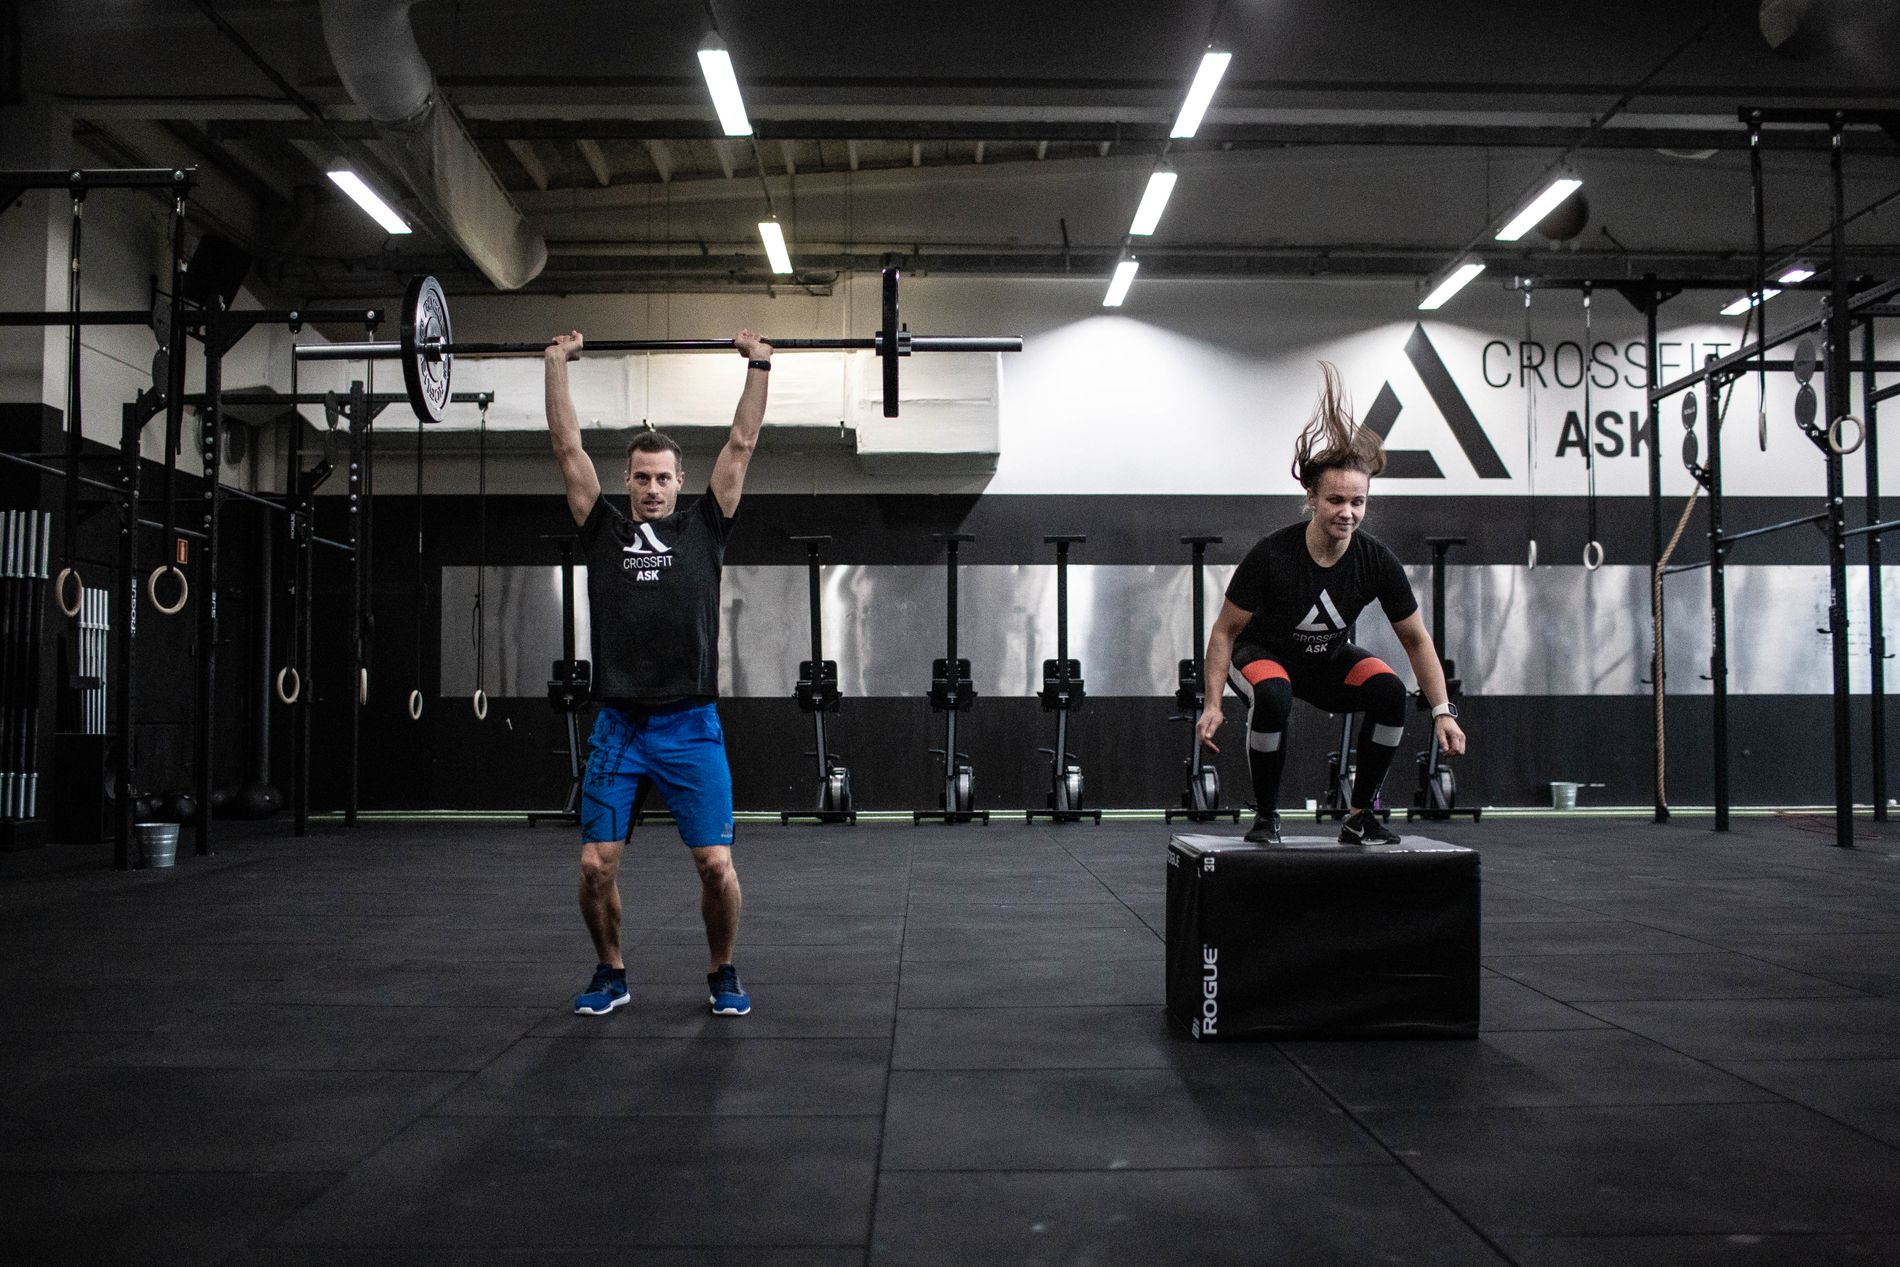 Lena Hanssen og Andreas Udal åpnet CrossFit Ask like ved Auglendstunellen for litt over en måned siden. 